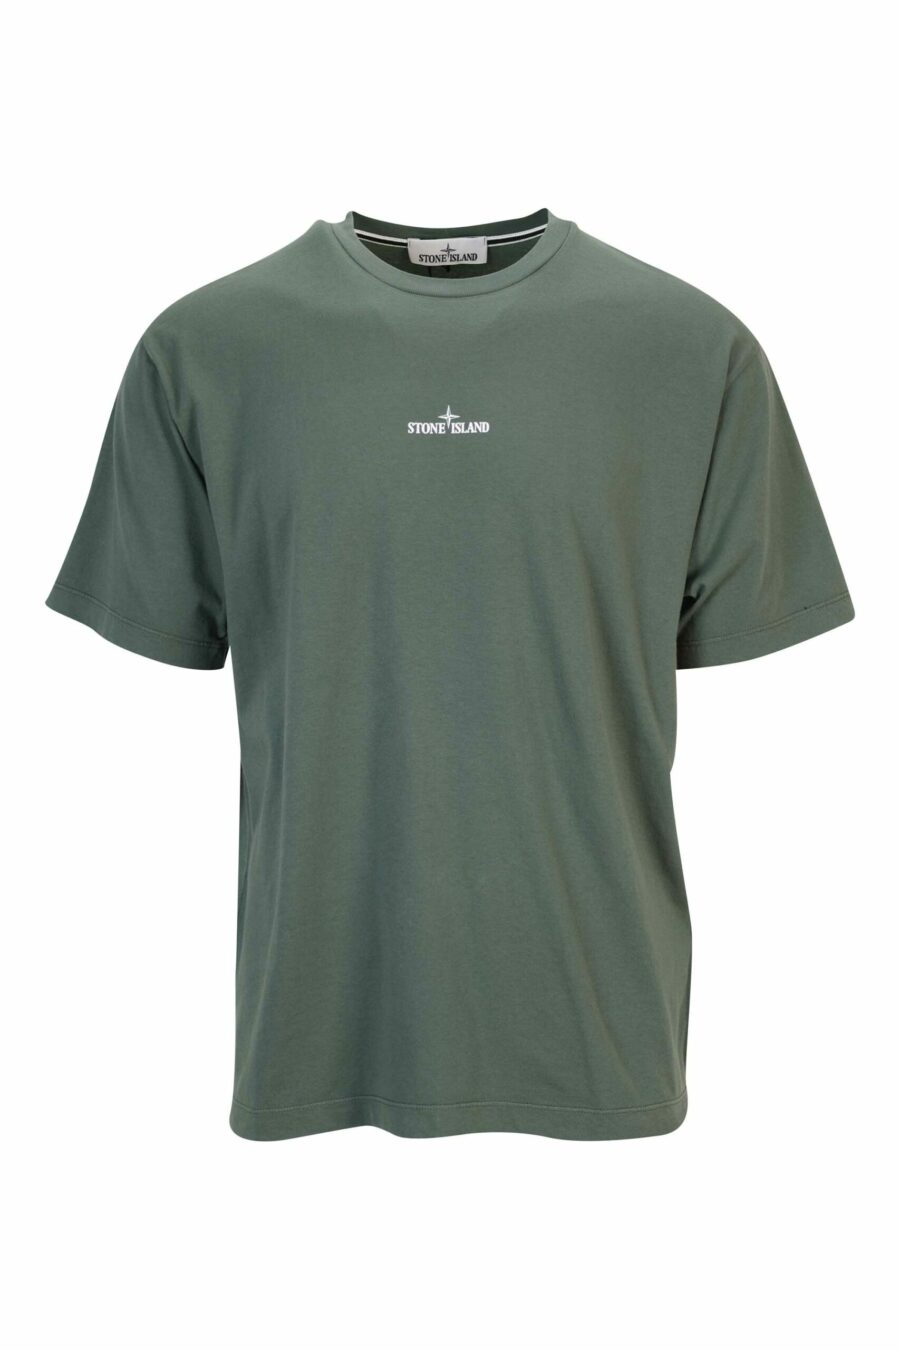 Militärgrünes T-Shirt mit weißem zentriertem Minilogo - 8052572928543 skaliert